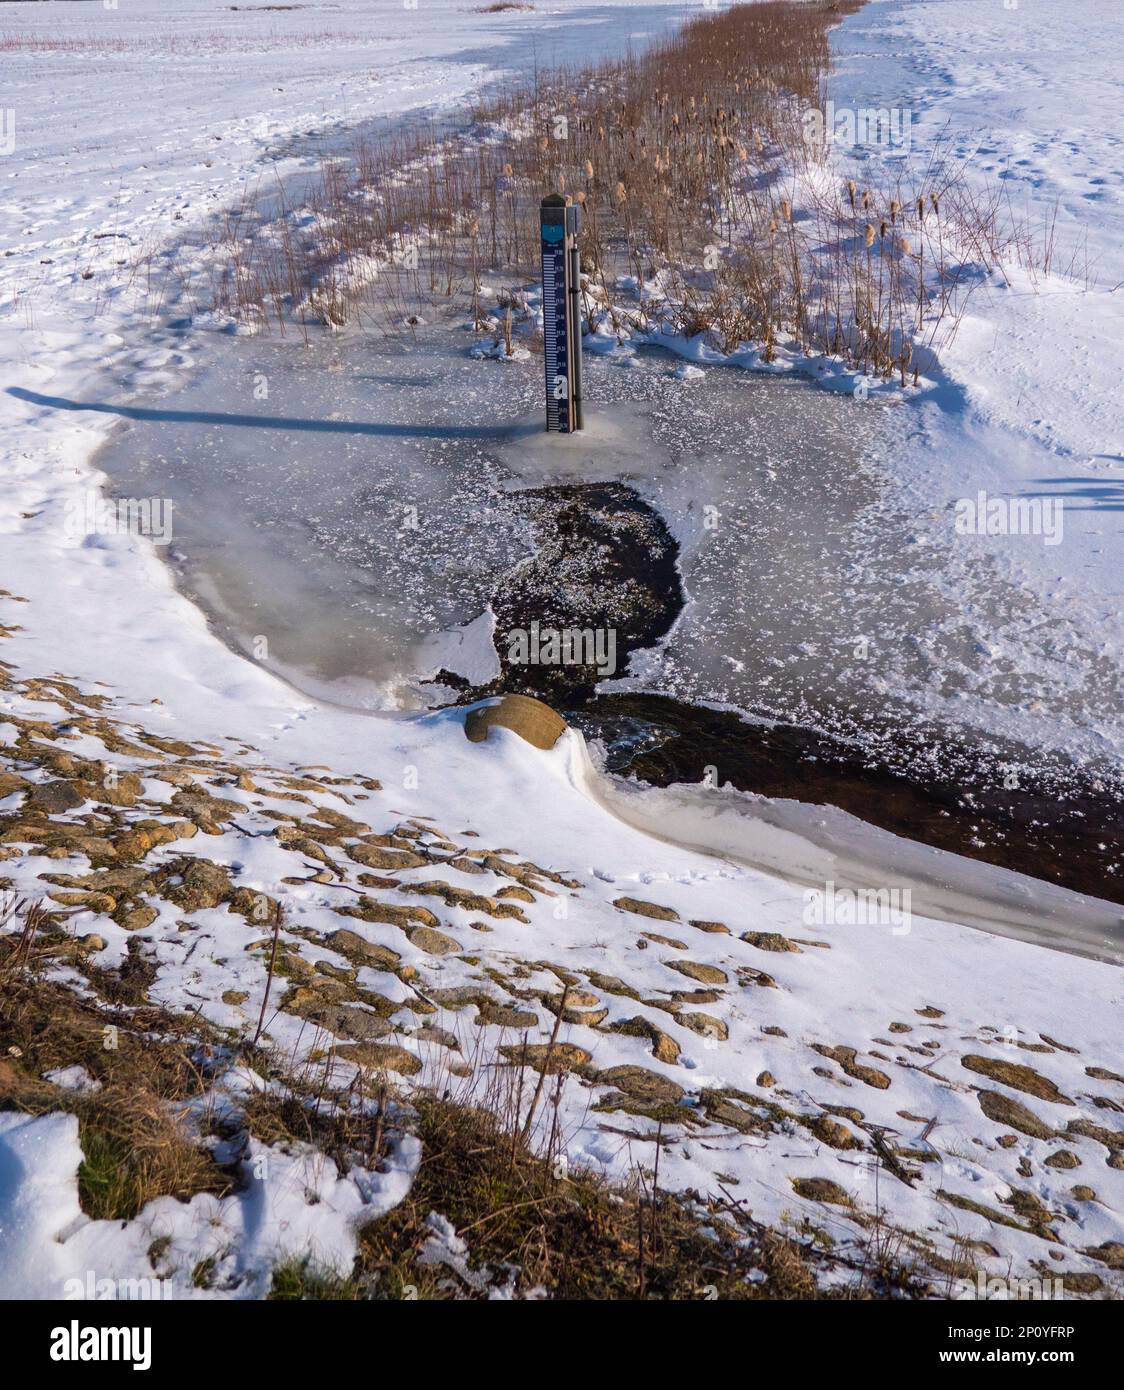 Paesaggio invernale di una fossa parzialmente congelata, con un'astina di livello al centro. E canne sullo sfondo. Foto Stock